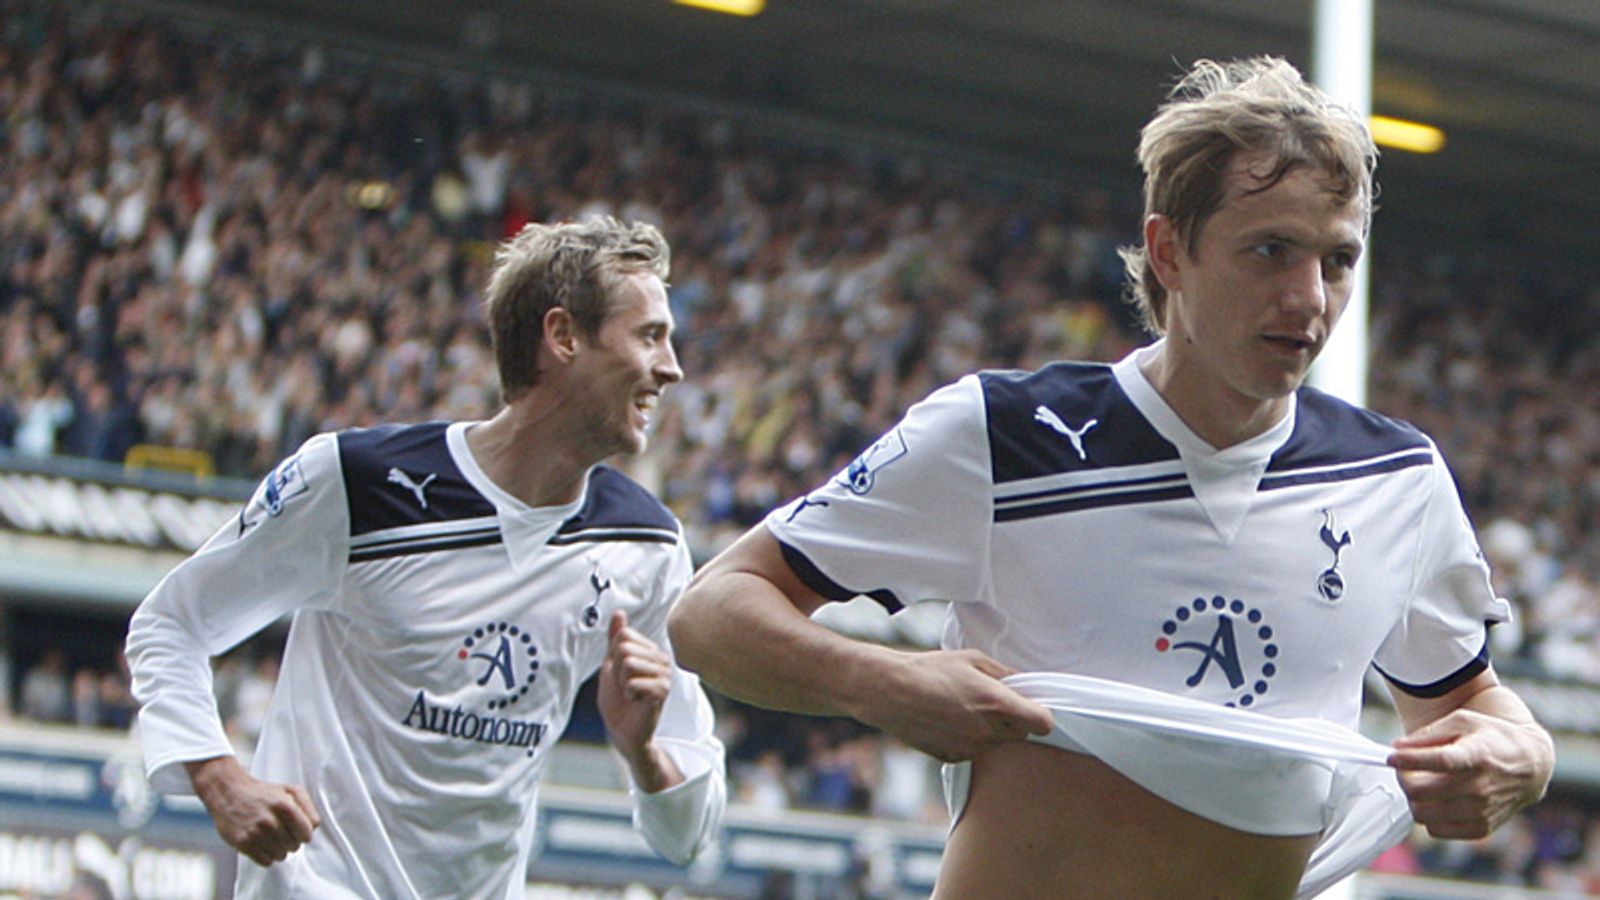 Tottenham 3 - 1 Wolves - Match Report & Highlights